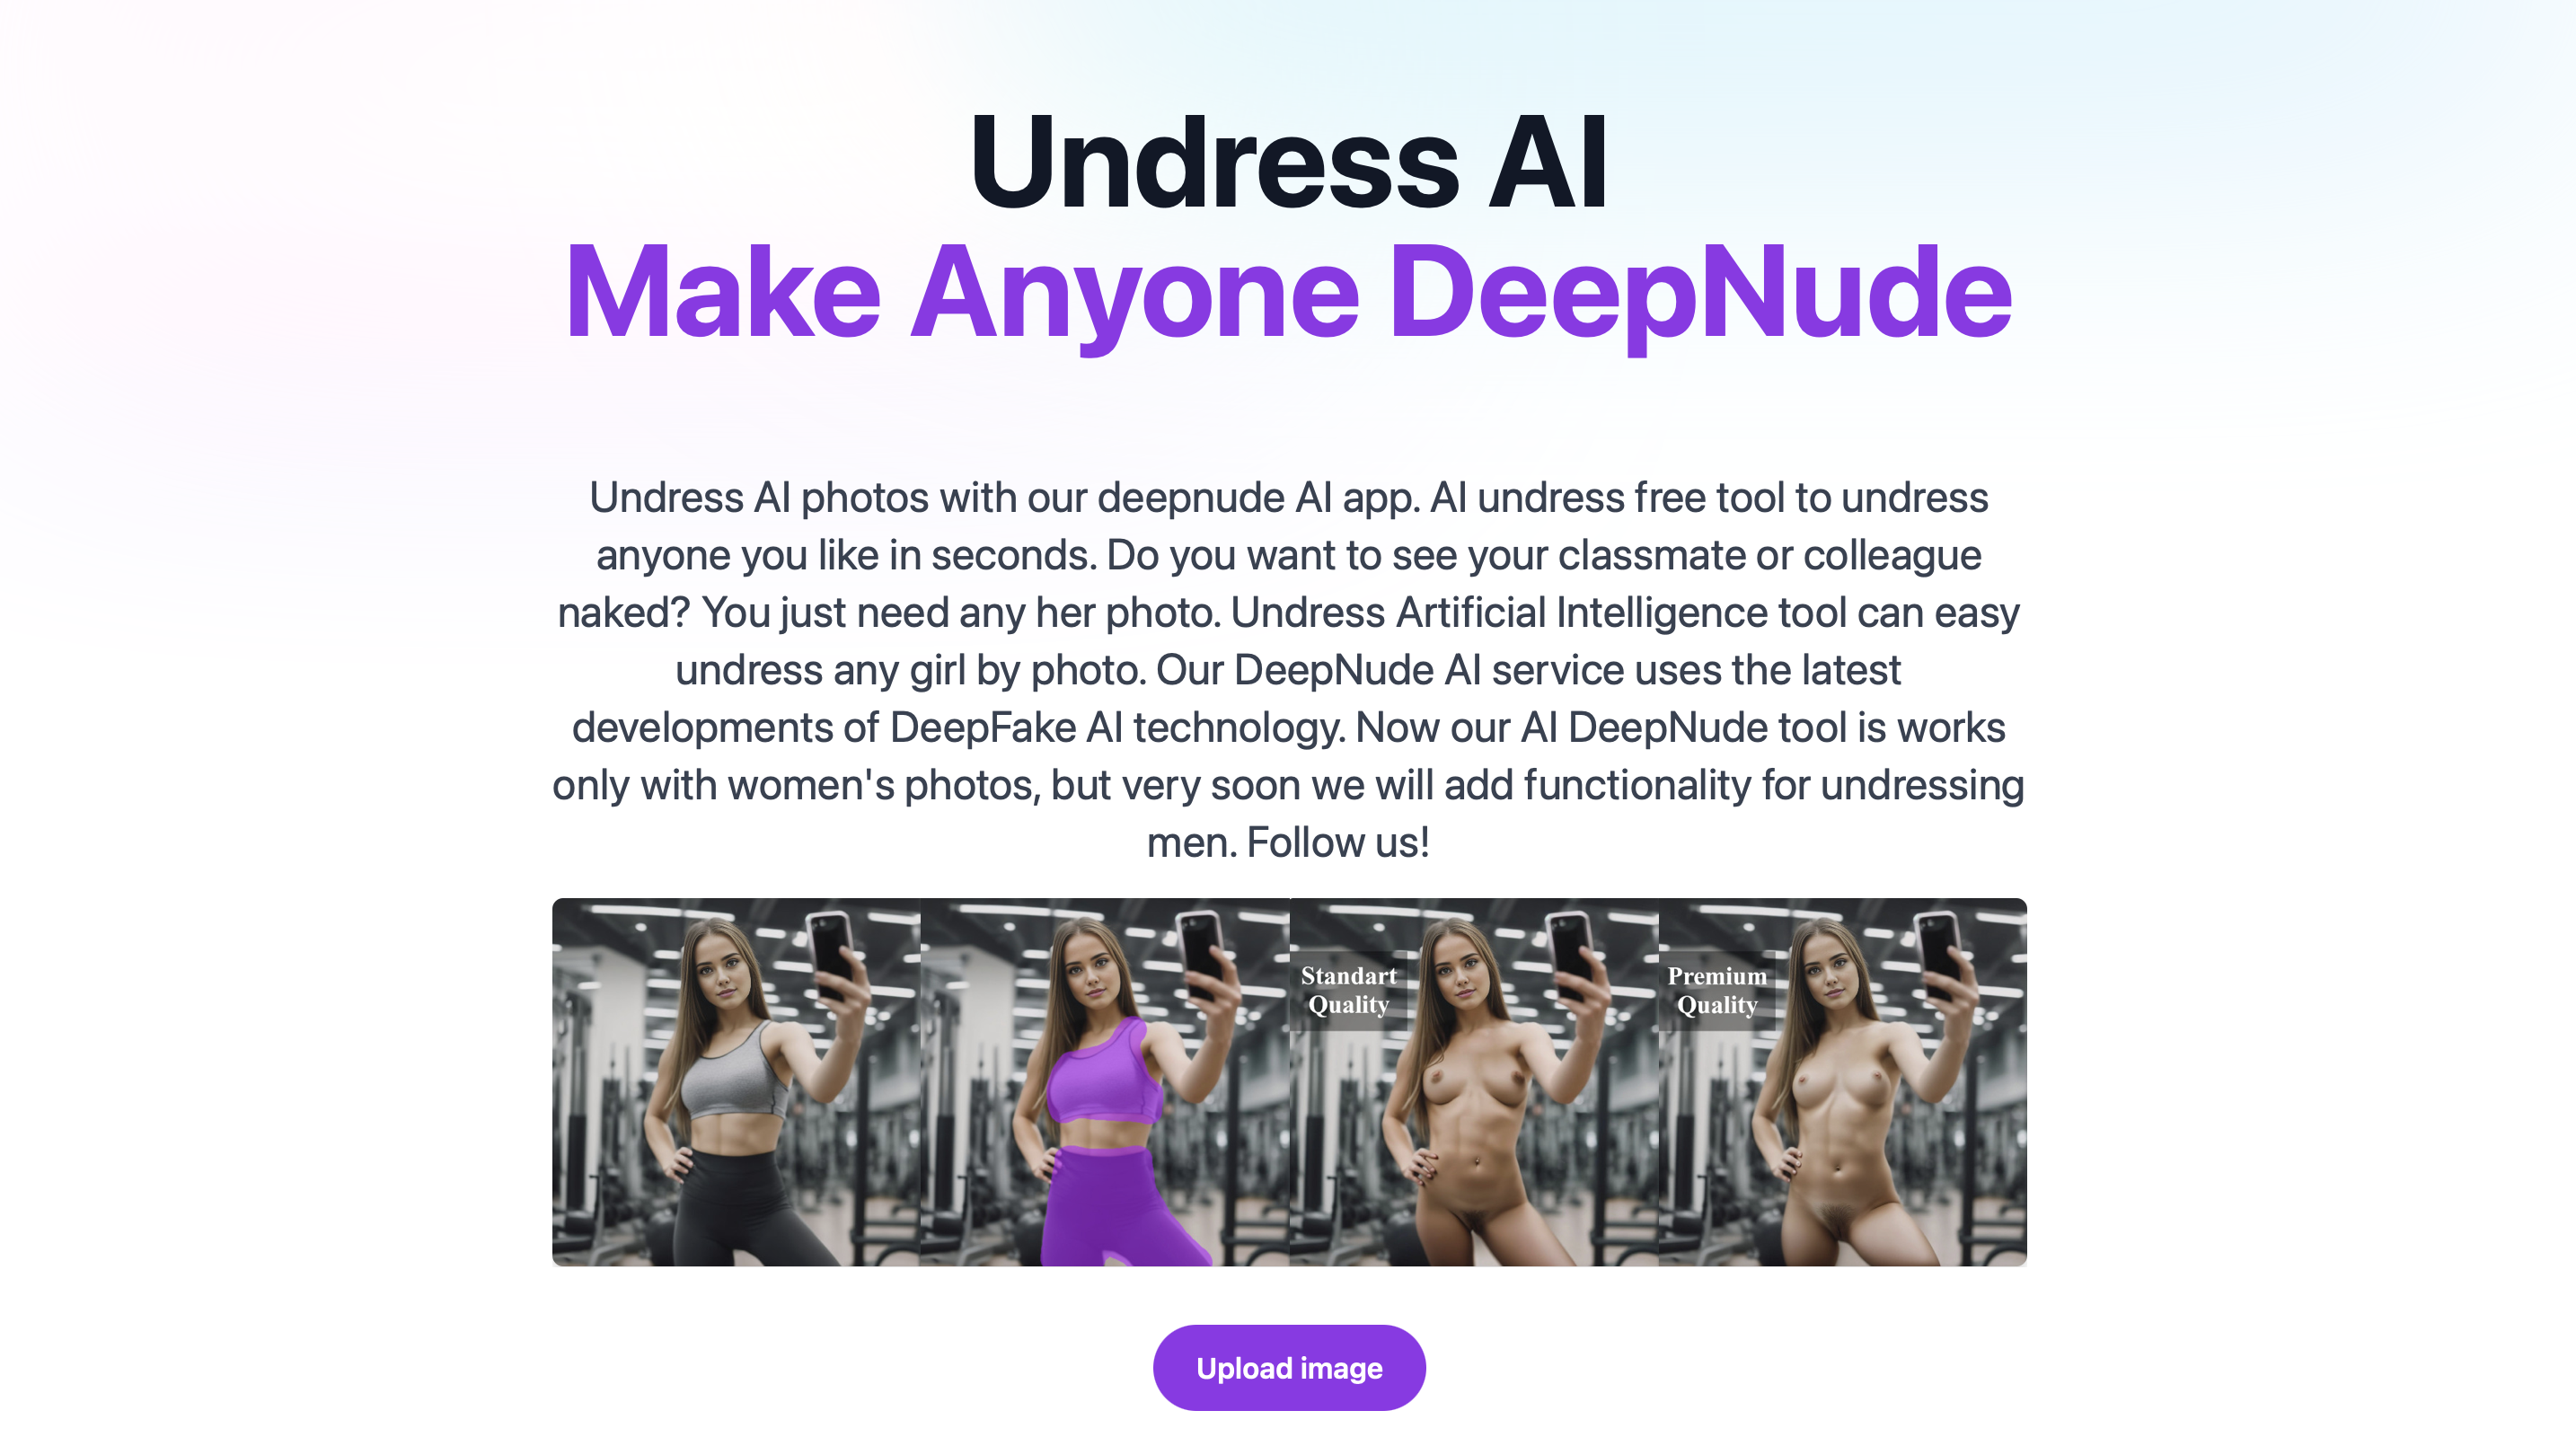 Nodress.io Undress AI. Make any girl DeepNude